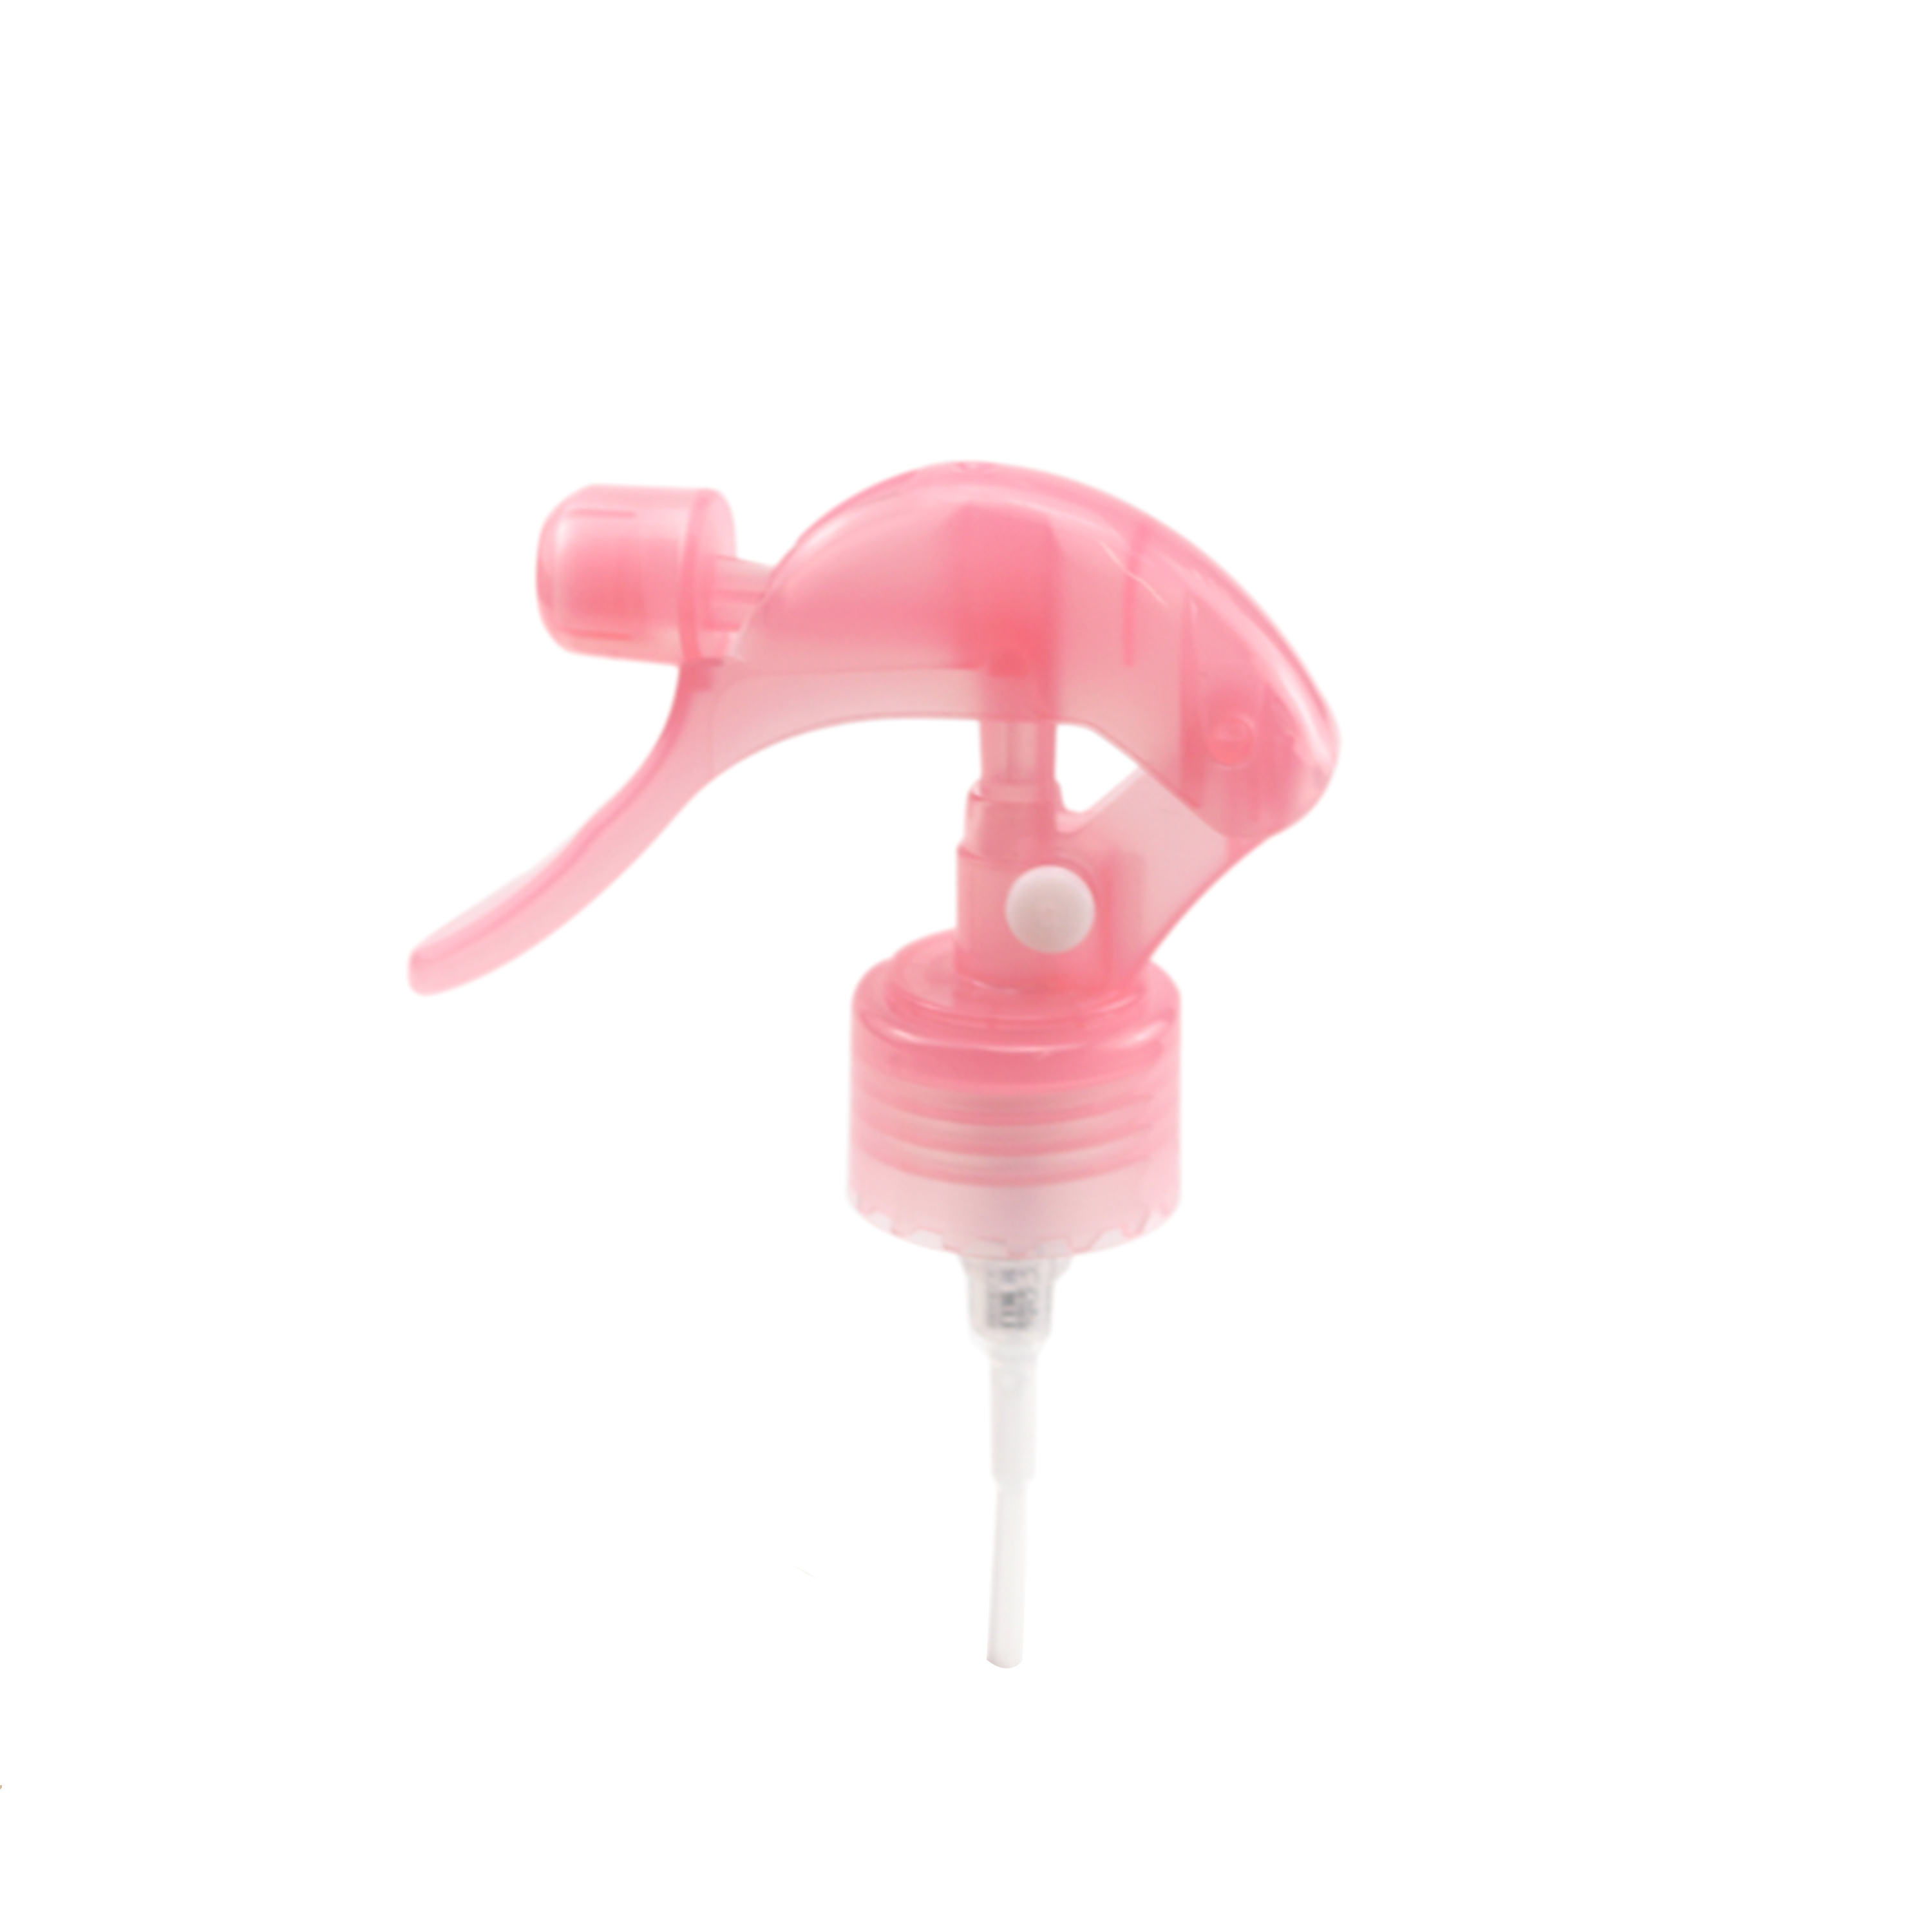 Plastic Mini Trigger Spray Pump 20/410 24/410 28/410 moholi o motle o fafatsa botlolo ea botlolo ea lotion pump trigger sprayer